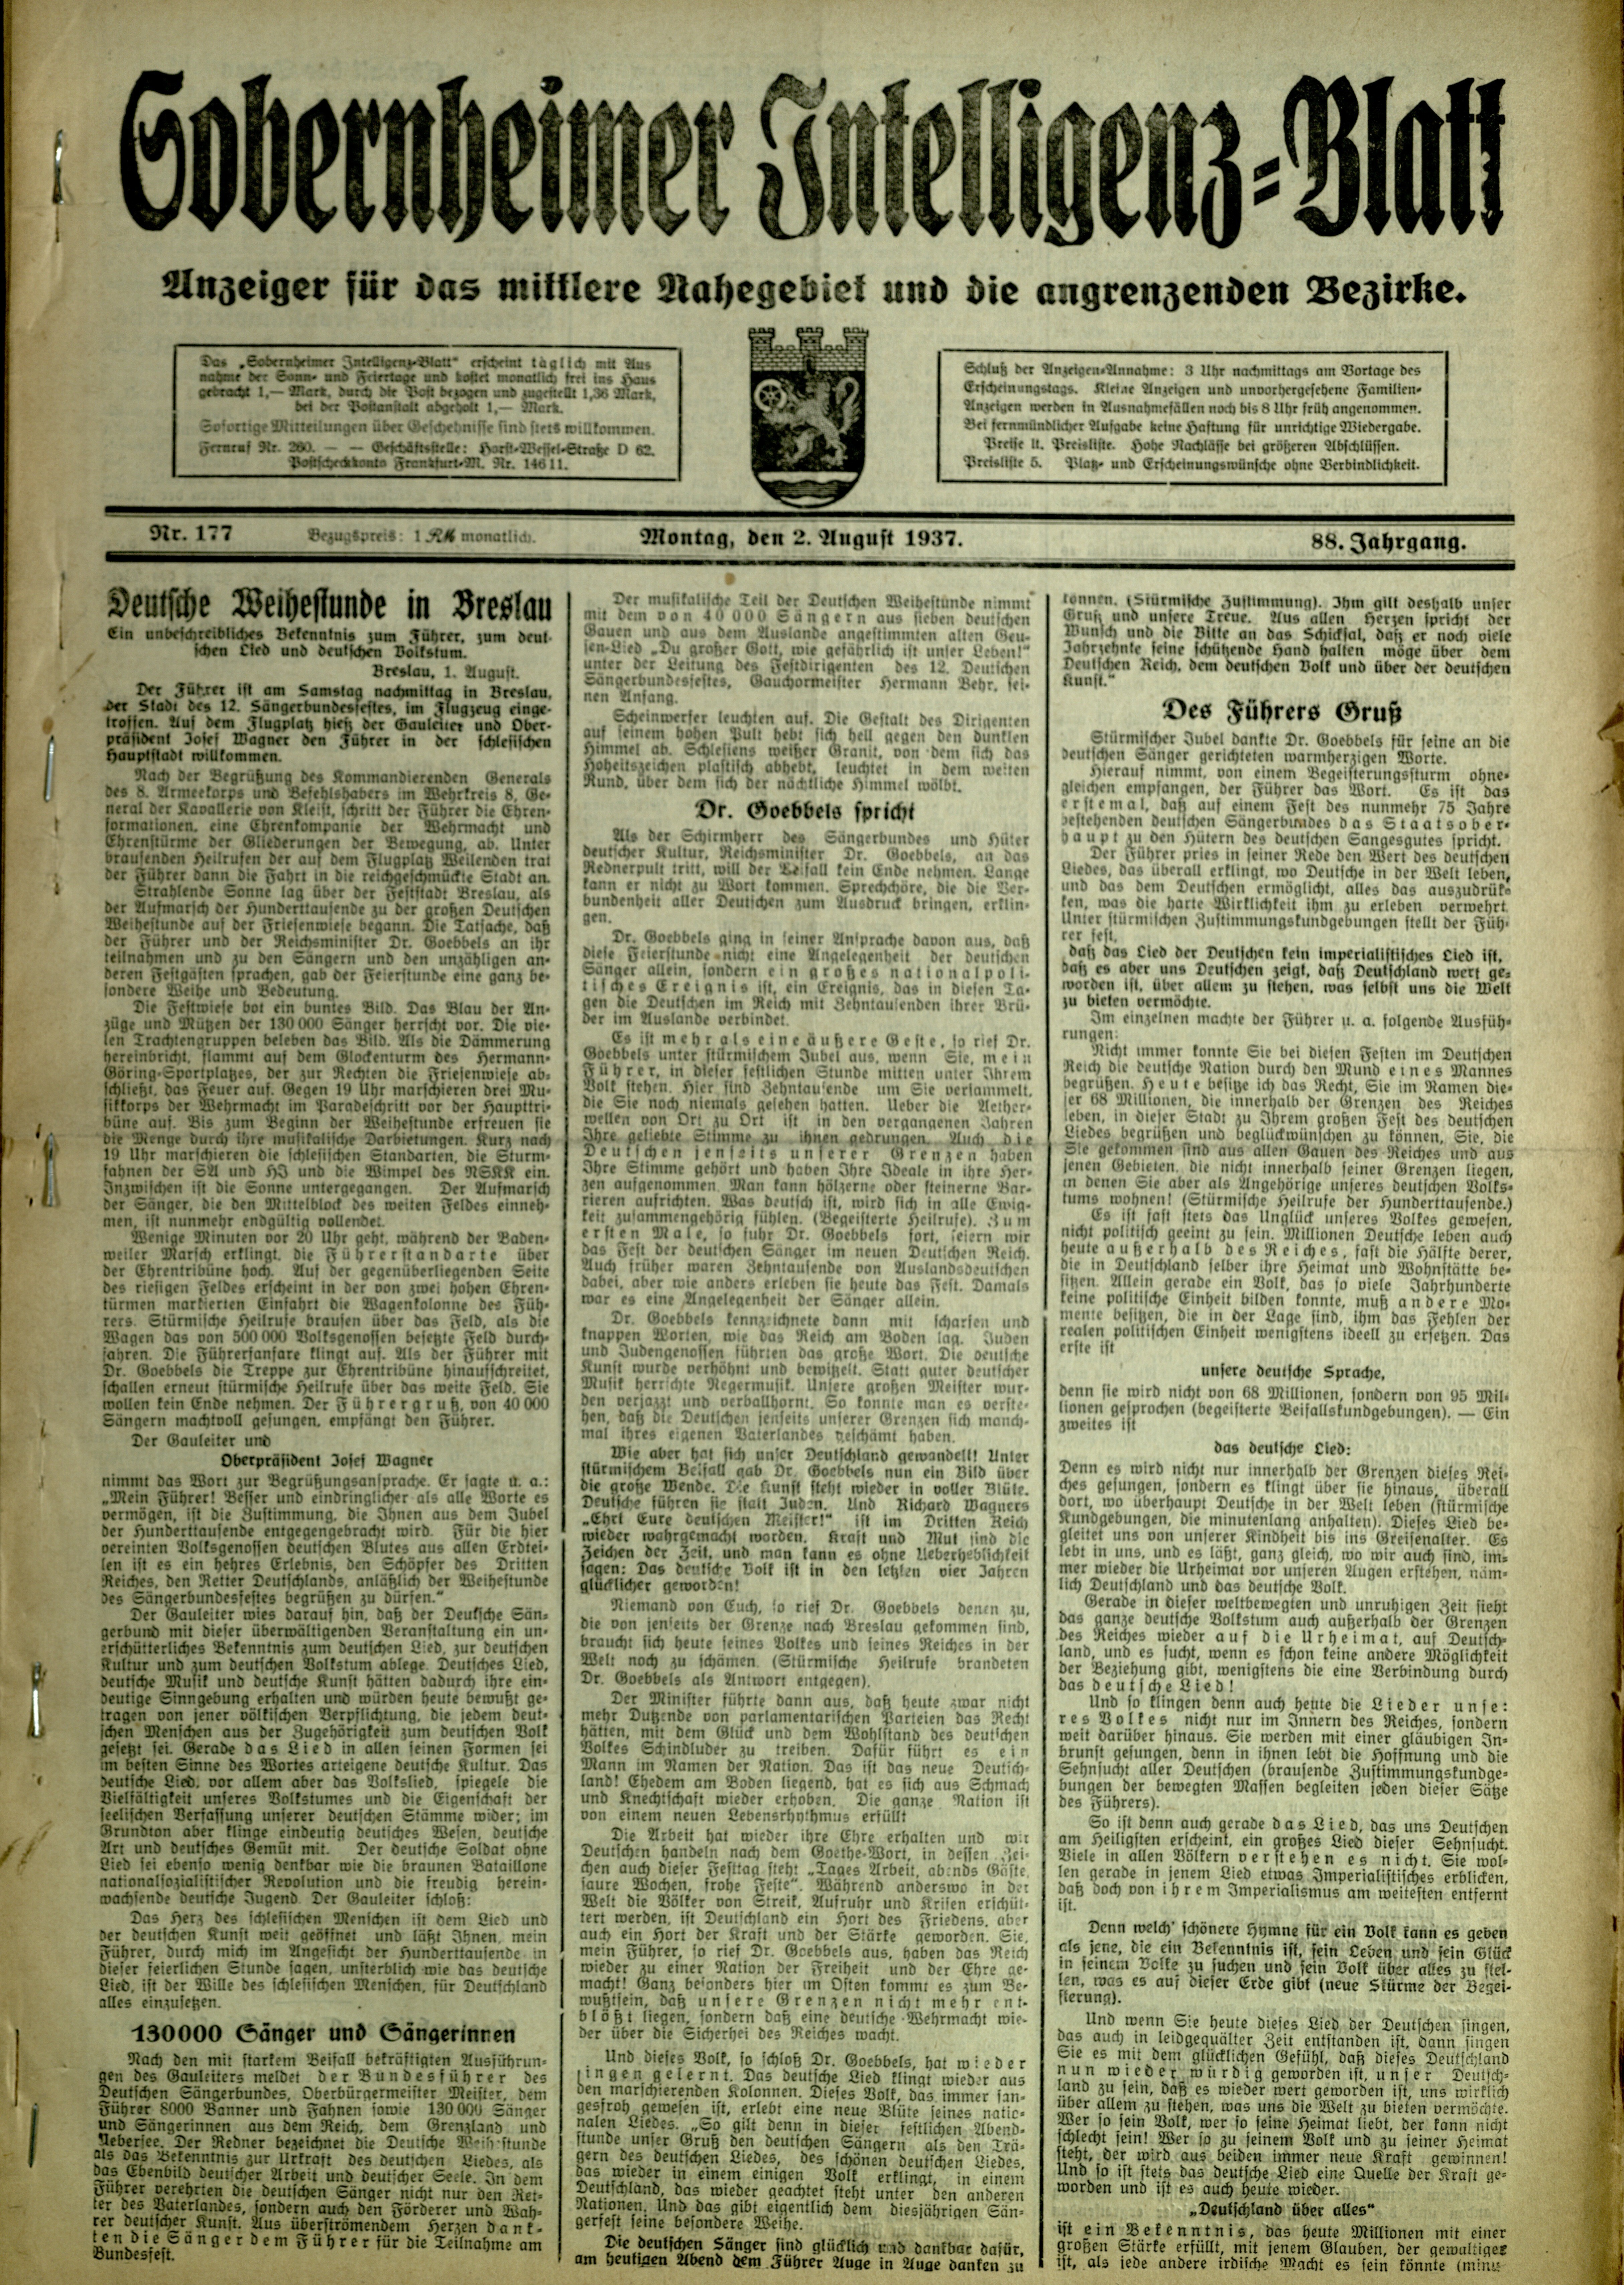 Zeitung: Sobernheimer Intelligenzblatt; August 1937, Jg. 88 Nr. 177 (Heimatmuseum Bad Sobernheim CC BY-NC-SA)